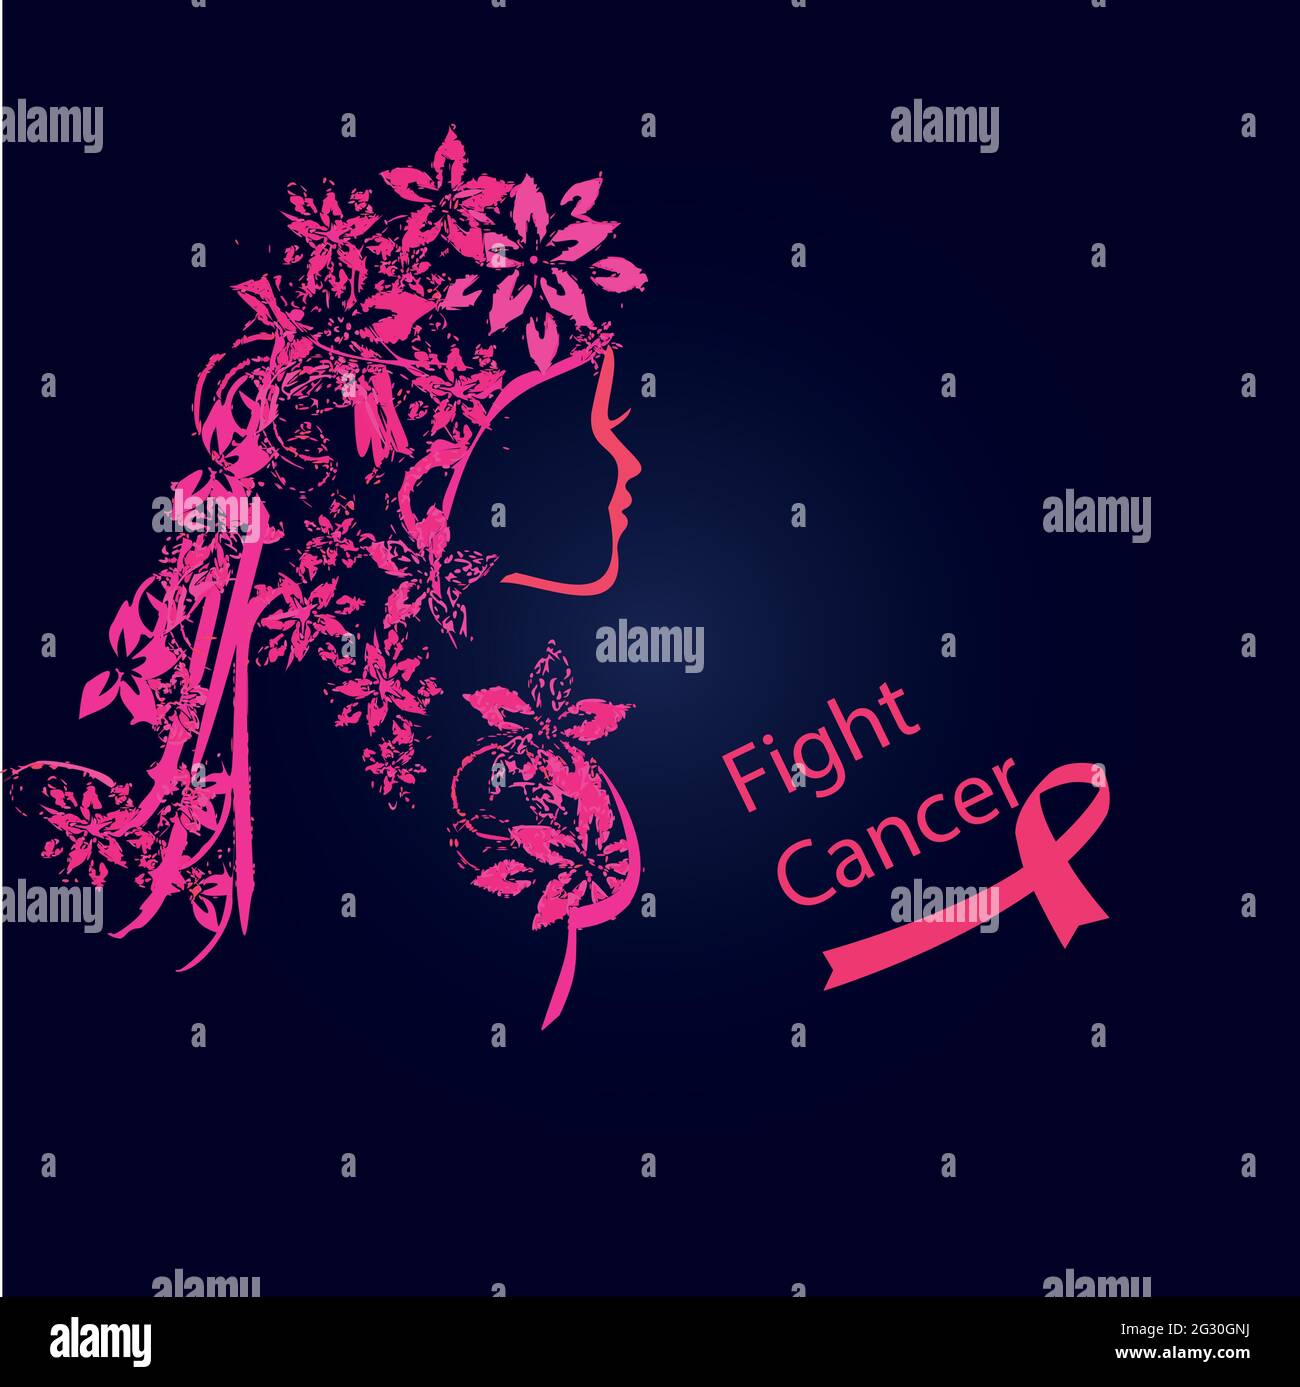 Journée internationale de la femme, journée internationale de sensibilisation au cancer du sein Illustration de Vecteur